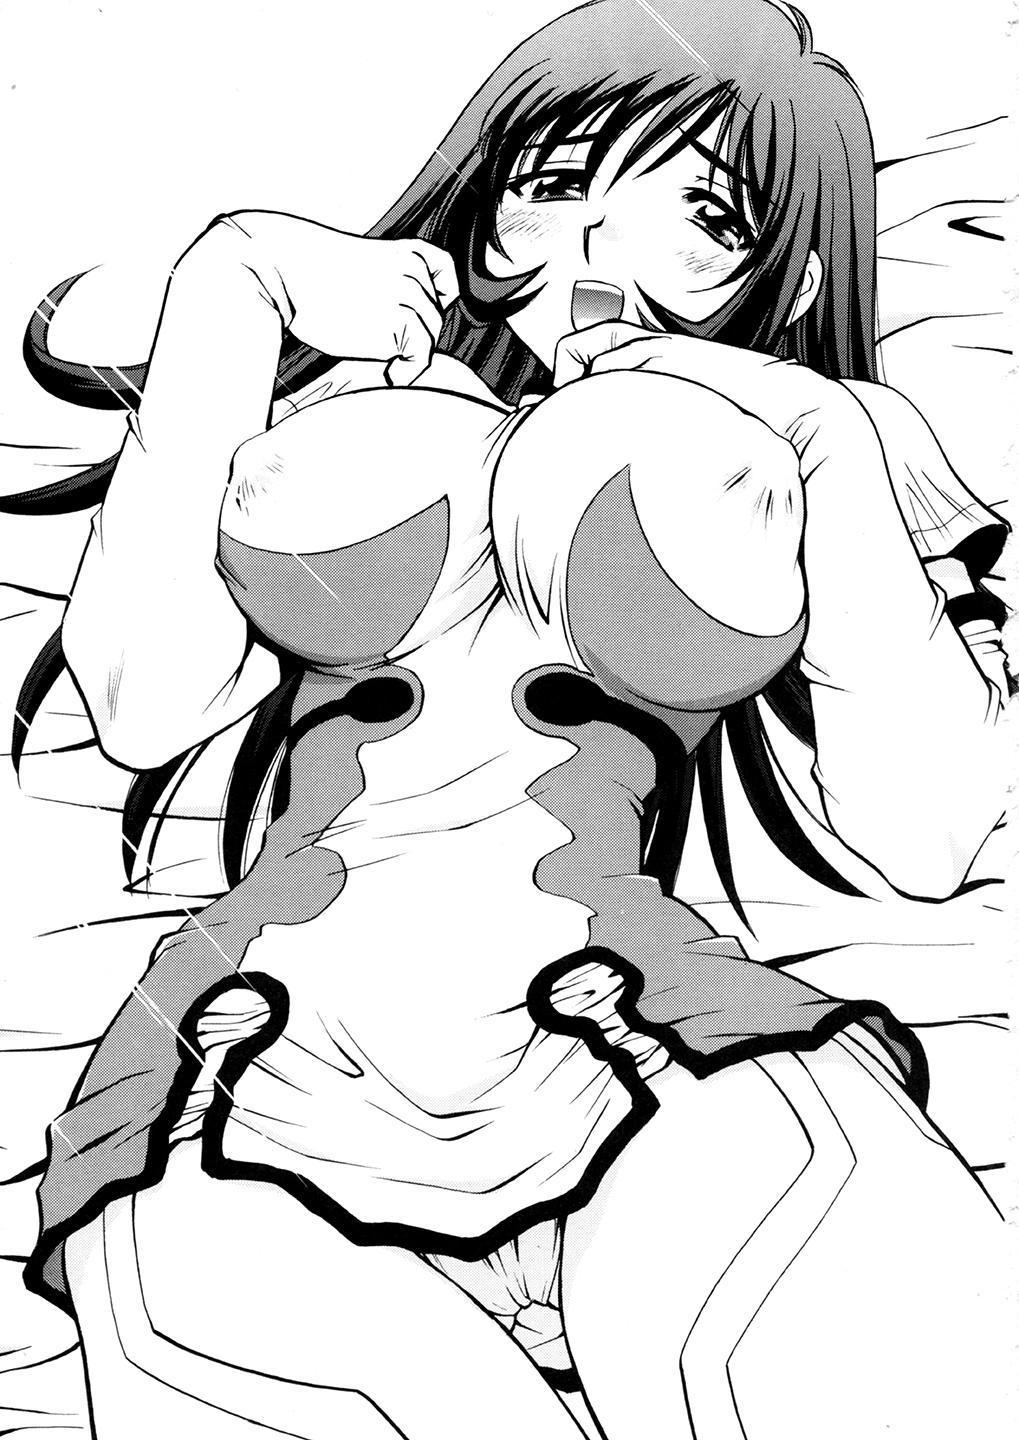 Novinha Kotona & Rei Mii - Zoids genesis Reality Porn - Page 2